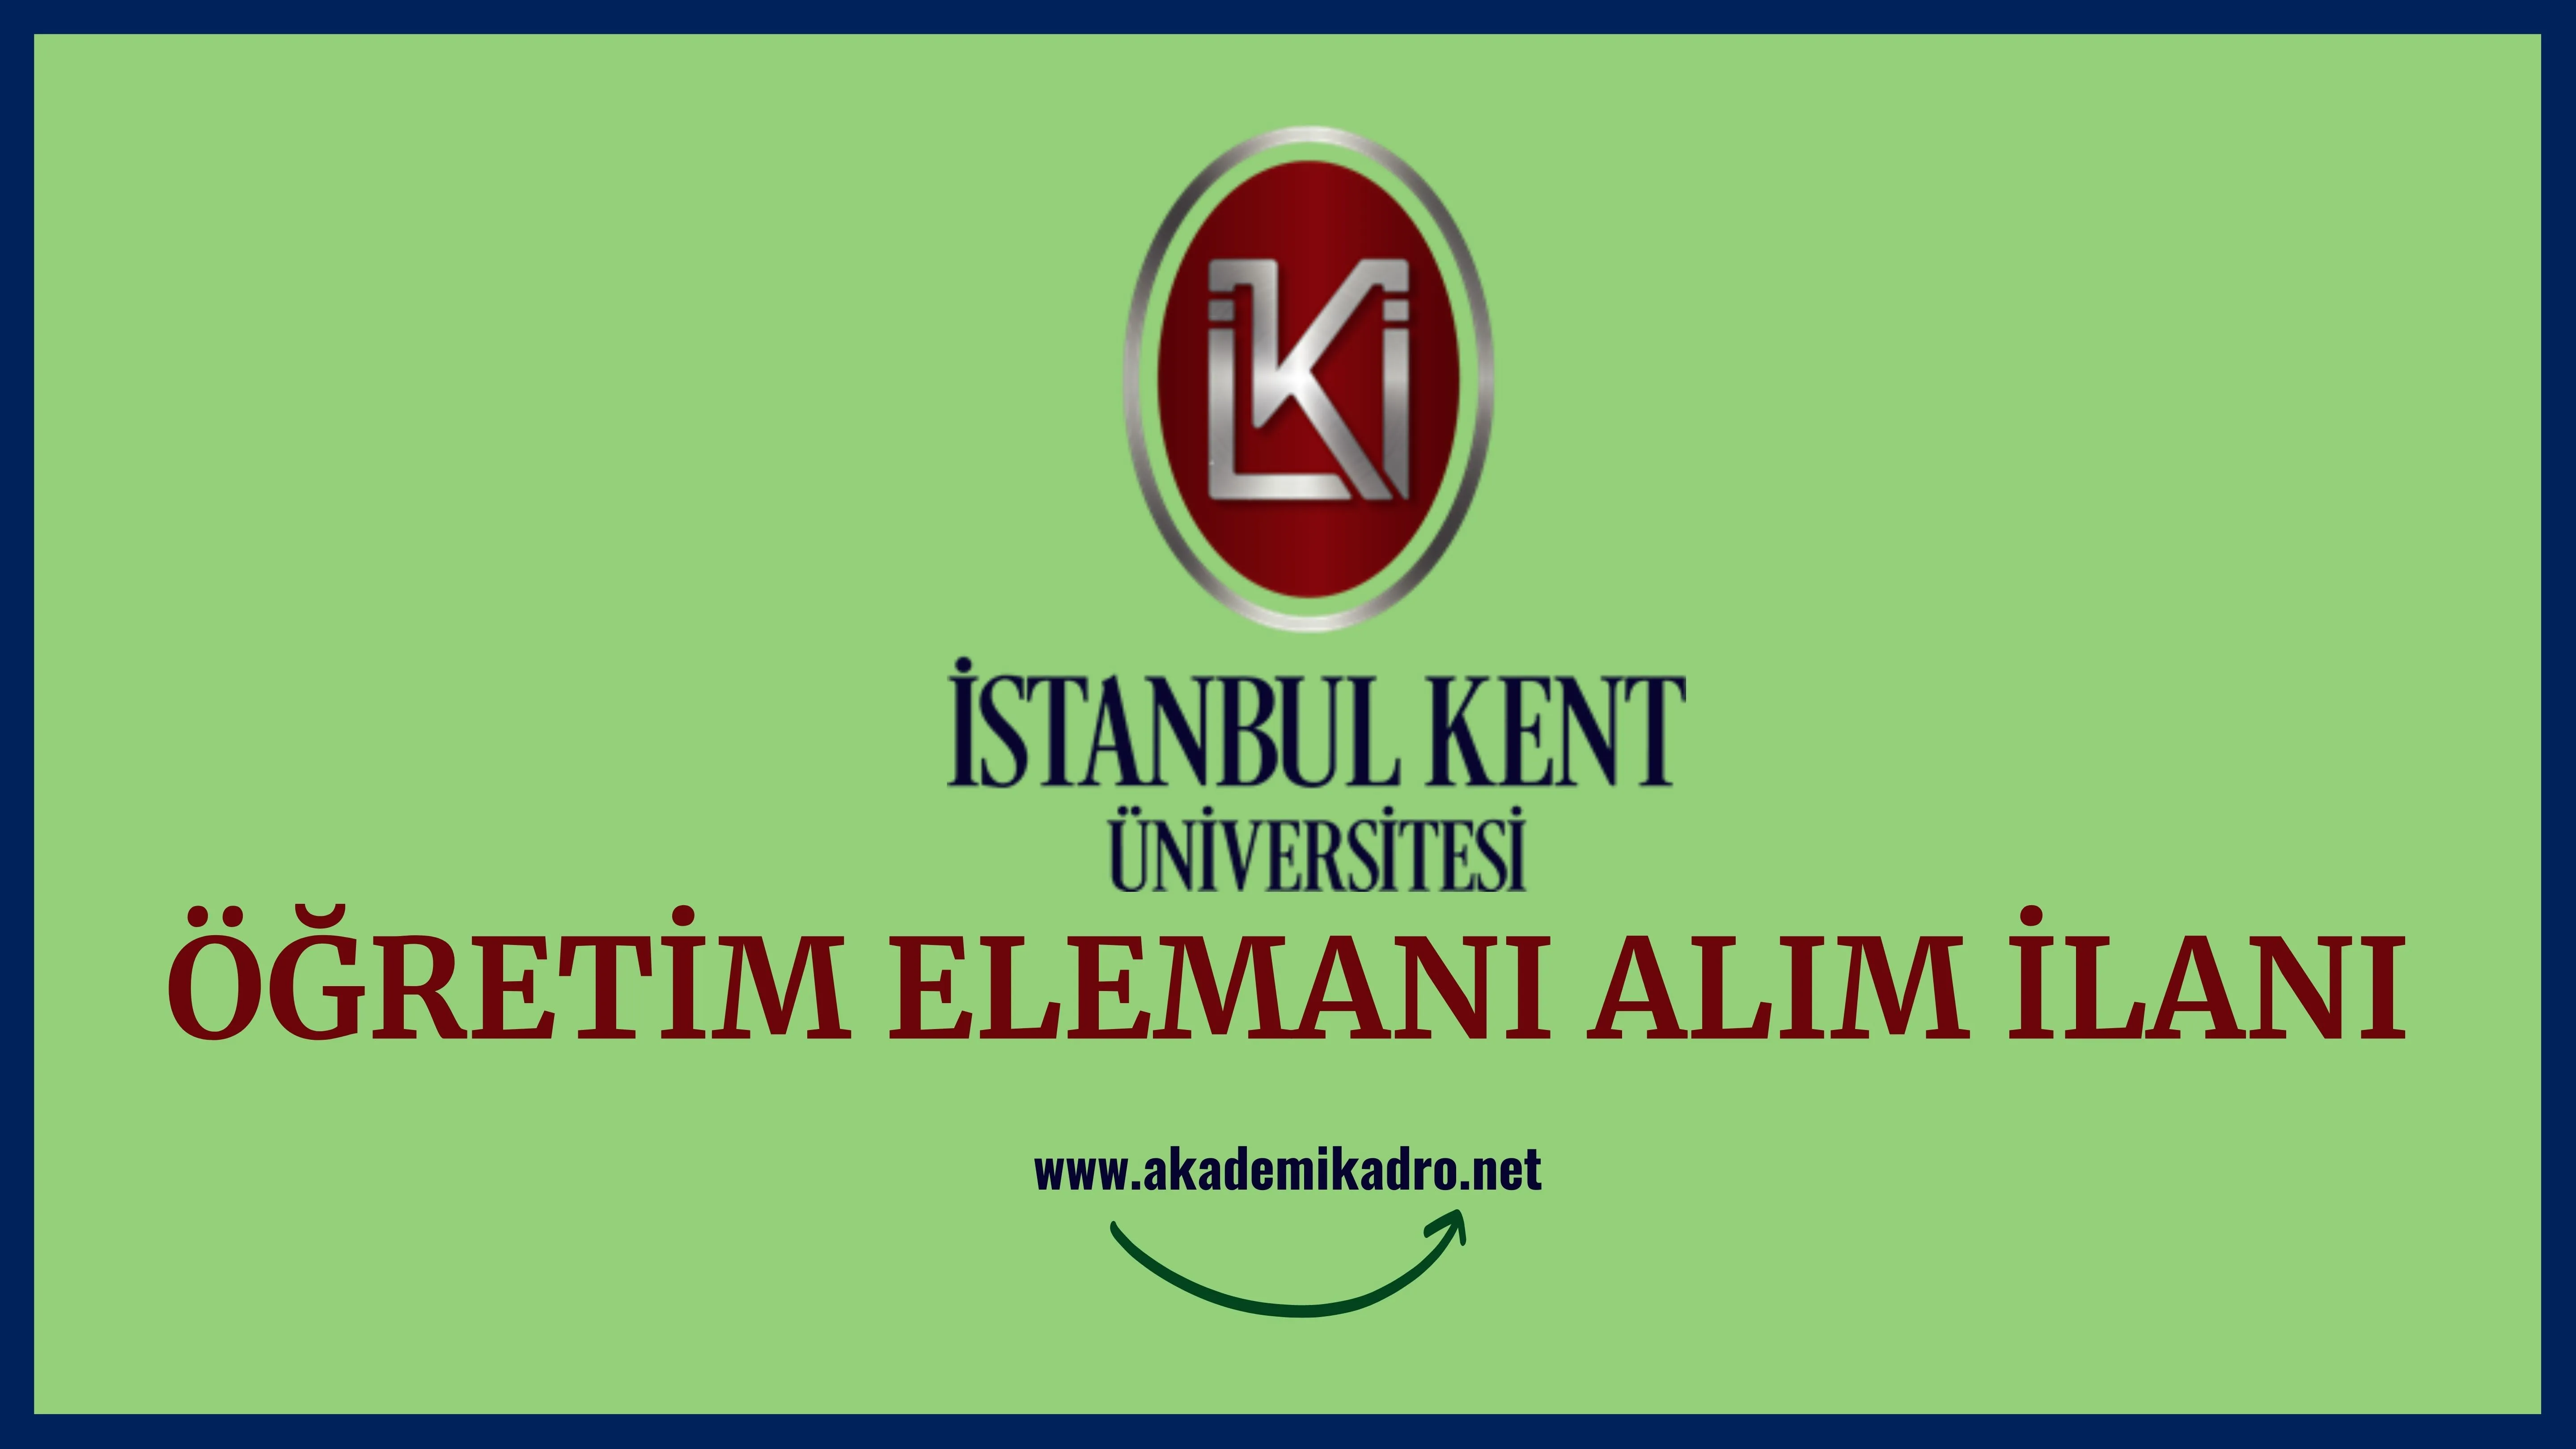 İstanbul Kent Üniversitesi 8 Öğretim Görevlisi, Araştırma görevlisi ve öğretim görevlisi alacaktır.